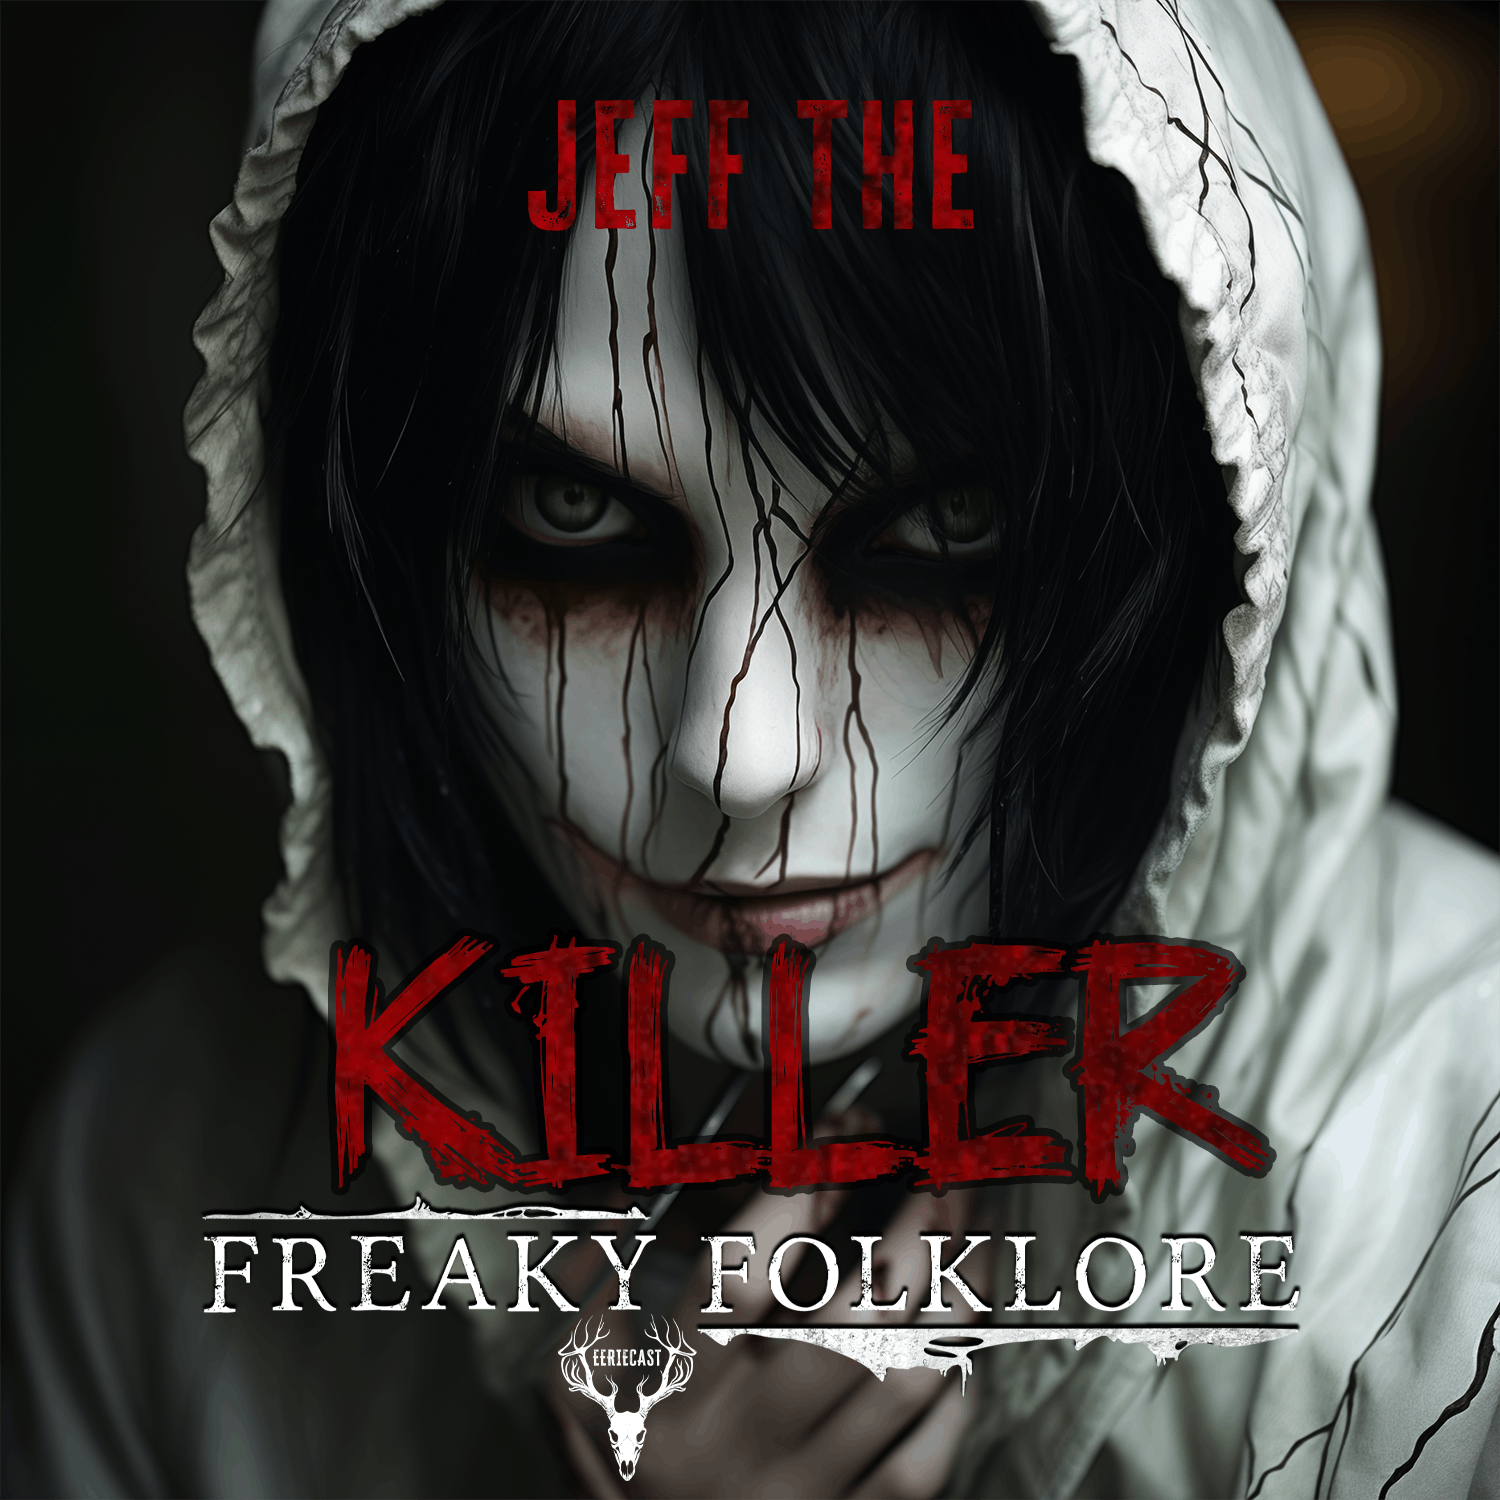 JEFF THE KILLER -Evil in the Shadows